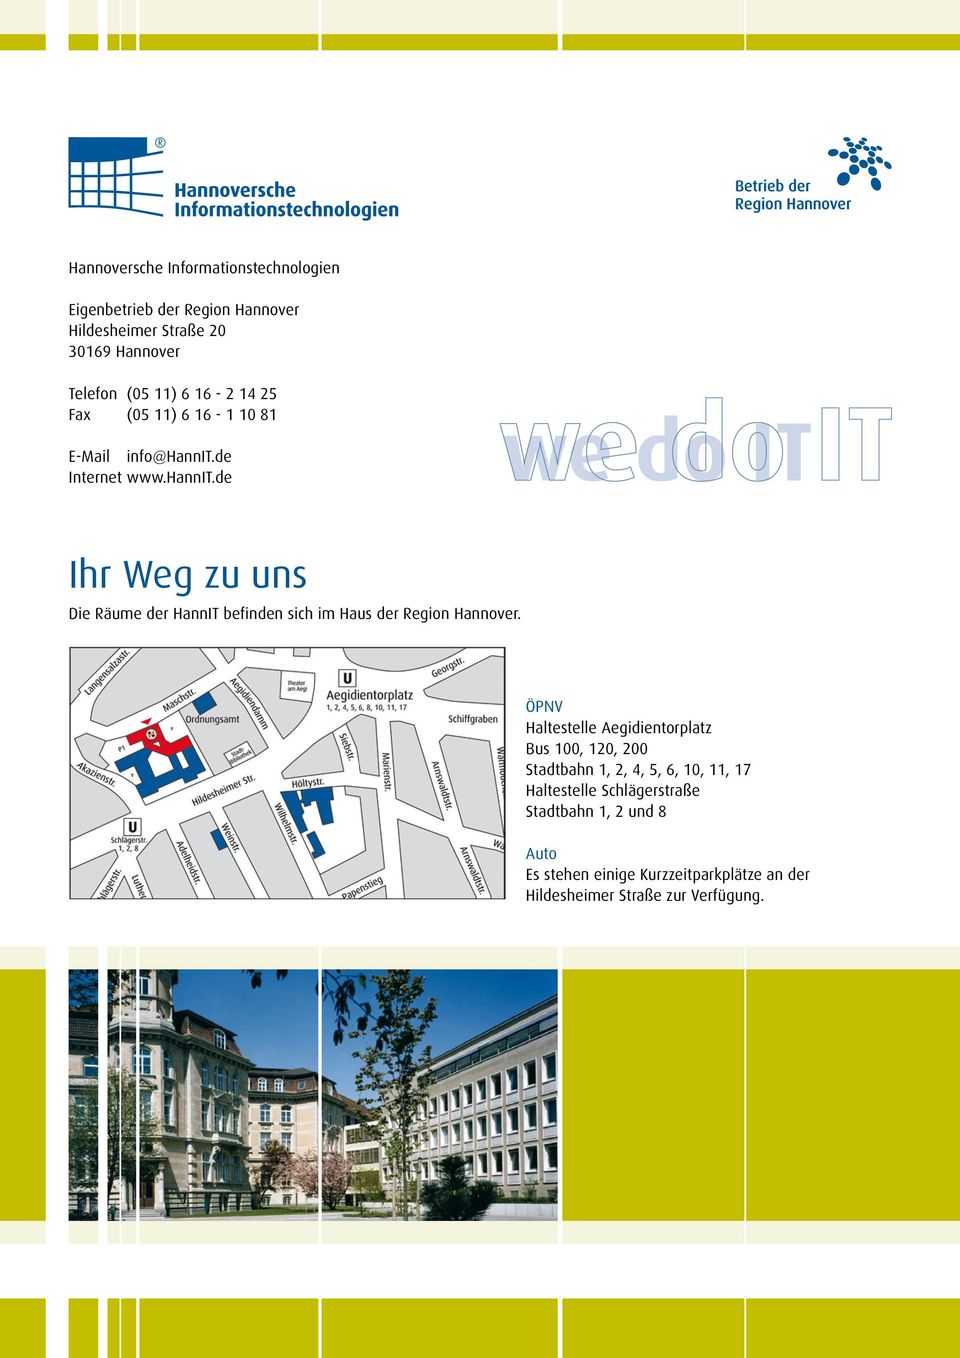 de Internet www.hannit.de Ihr Weg zu uns Die Räume der HannIT befinden sich im Haus der Region Hannover.